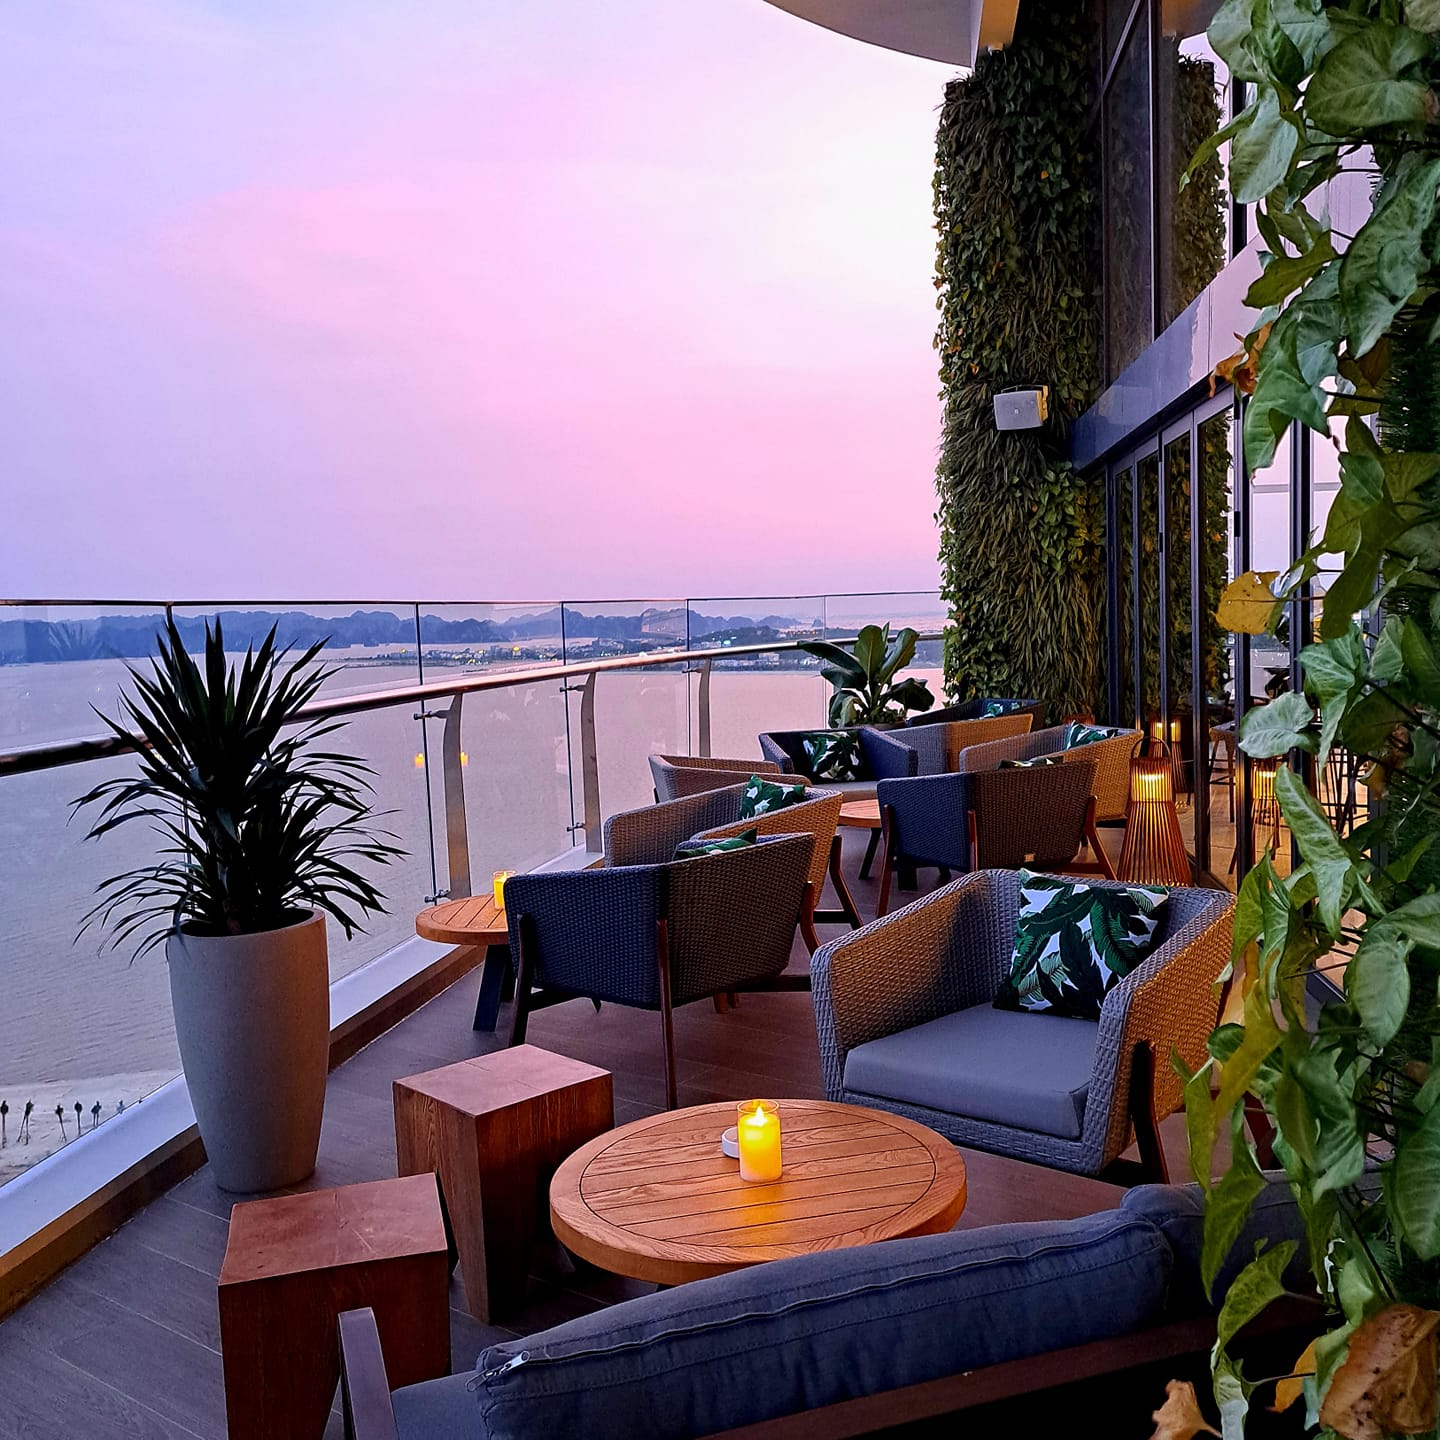 Khách sạn biển đẹp nhất Việt Nam từng nhận cả loạt giải thưởng quốc tế: Rooftop ngắm trọn toàn cảnh vịnh Hạ Long, có bãi biển riêng thỏa sức chơi